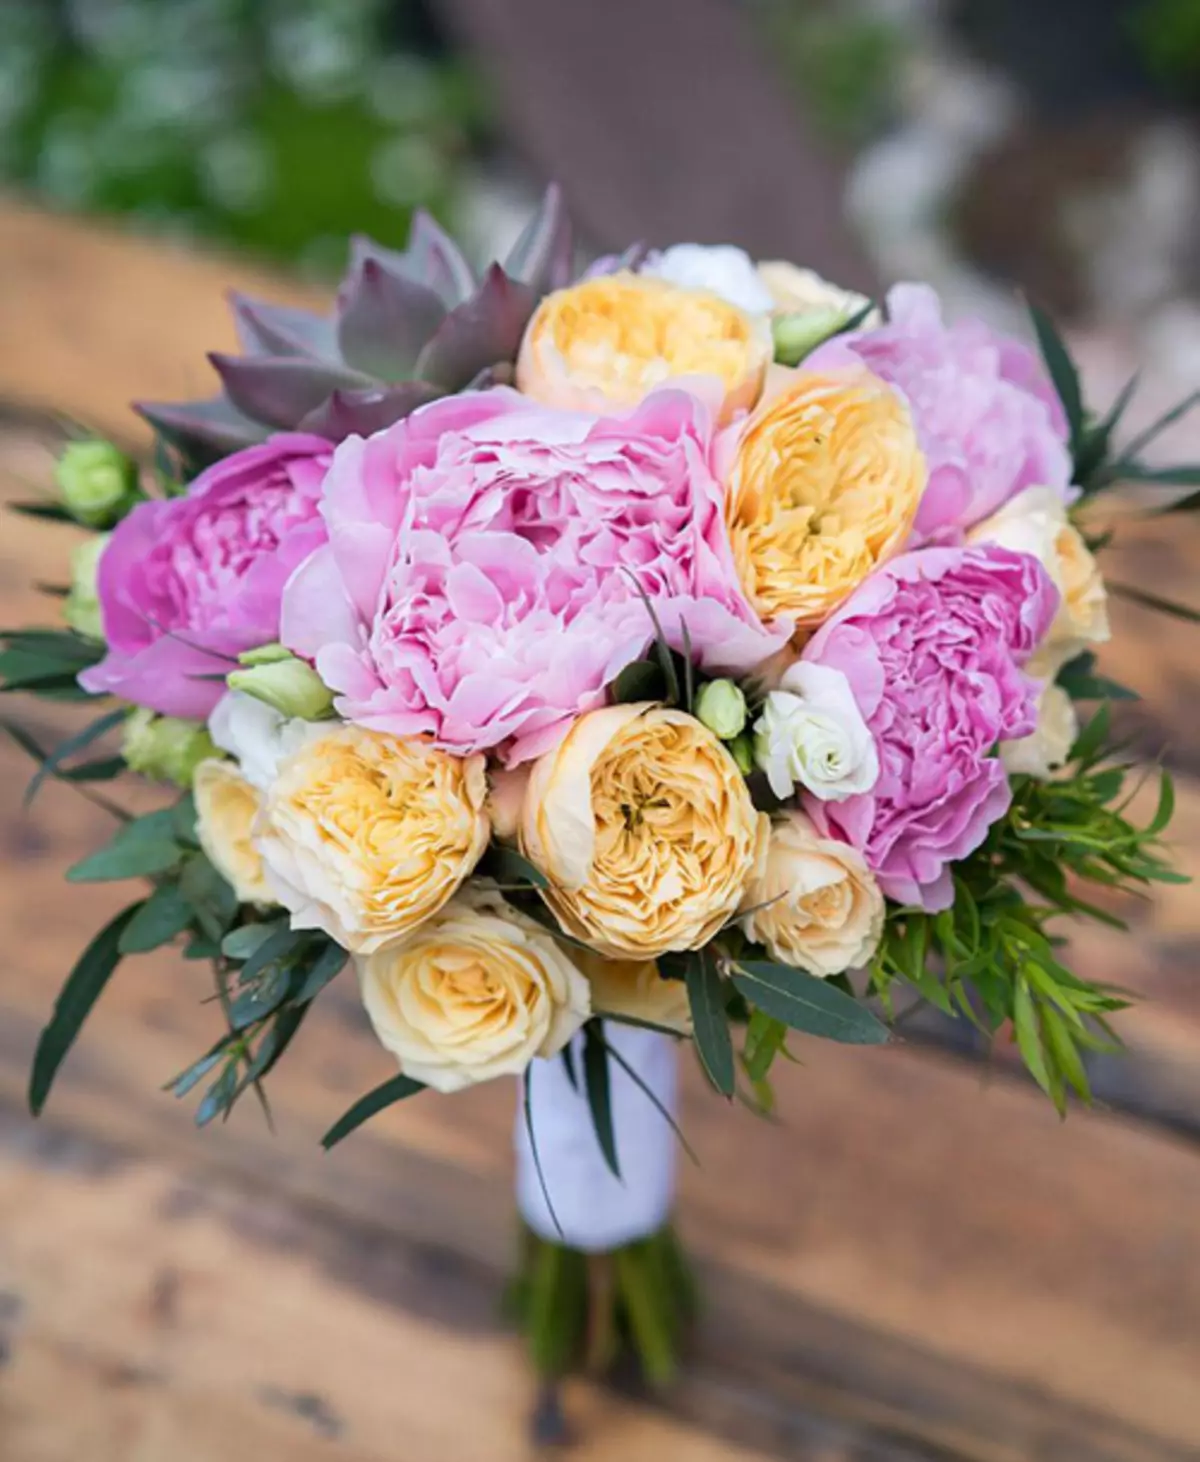 모란의 결혼식 꽃다발 (108 사진) : 흰색 수문과 빨간 칼라와의 조합, 결혼식 꽃다발의 부르고뉴, 라일락 및 자주색 꽃의 조합 8013_66